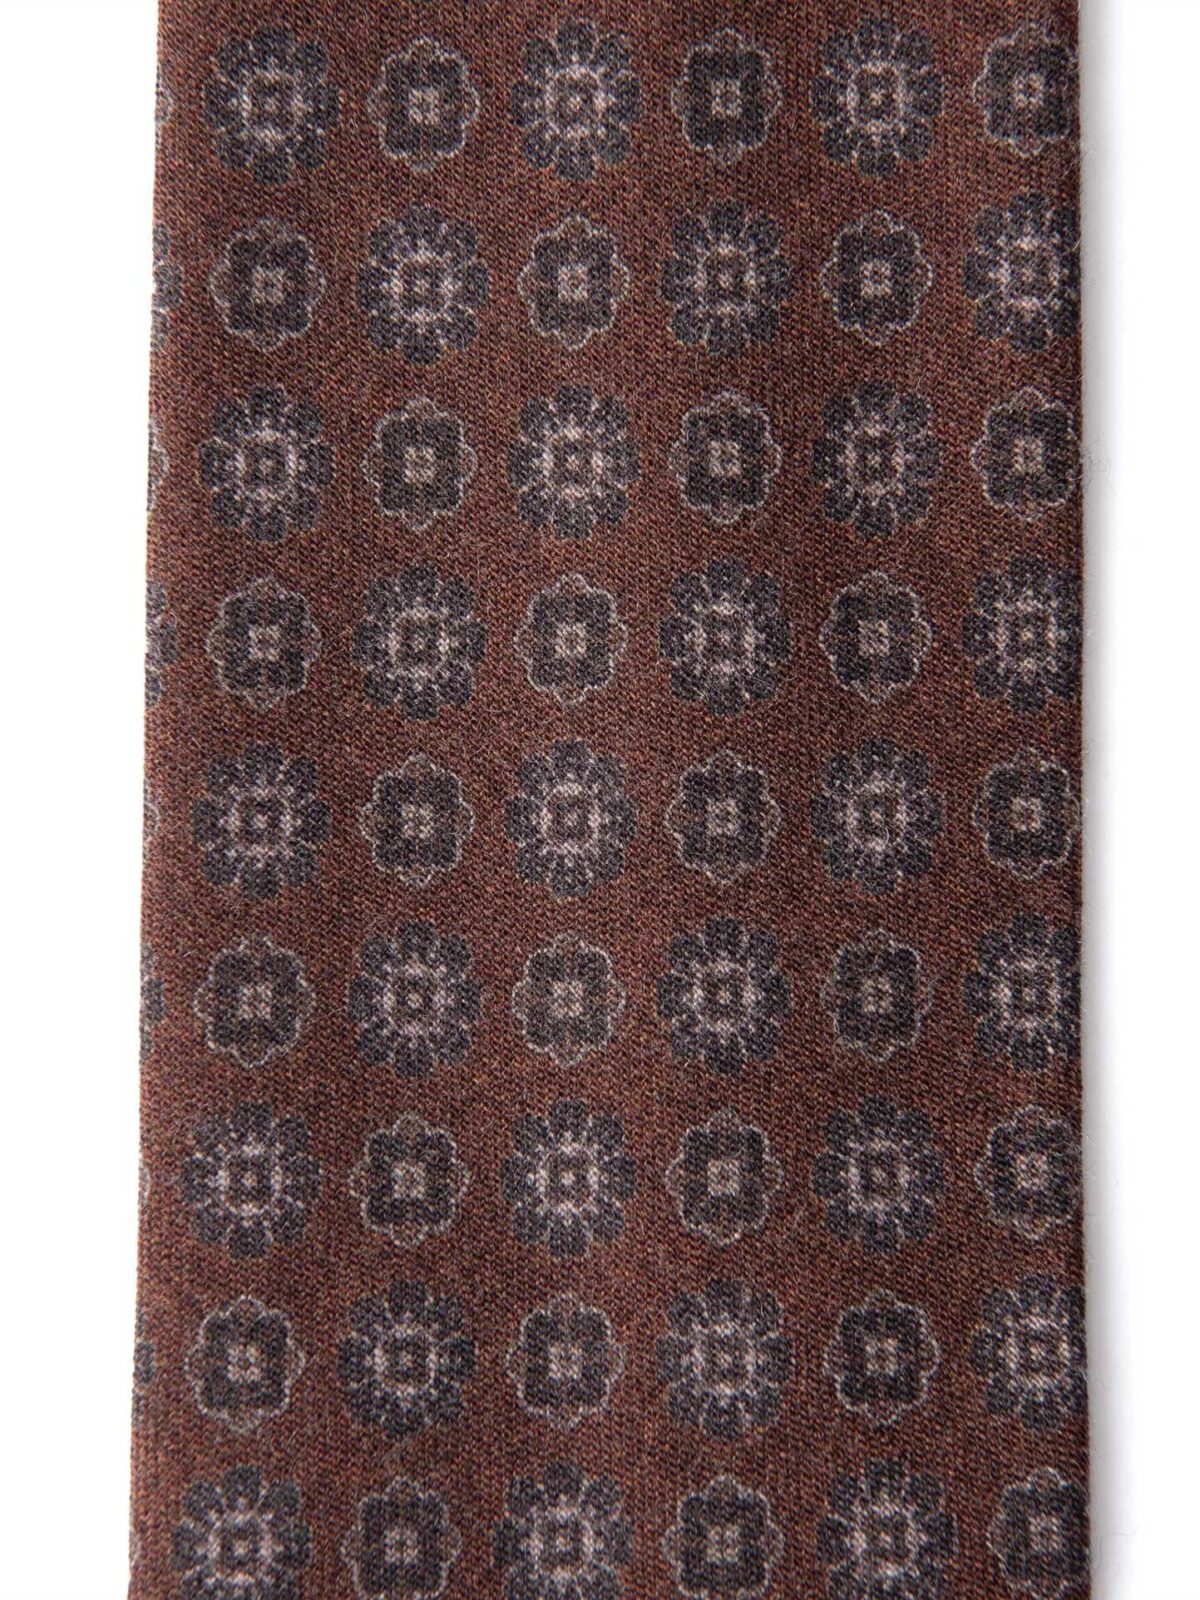 Rust Printed Wool Foulard Tie